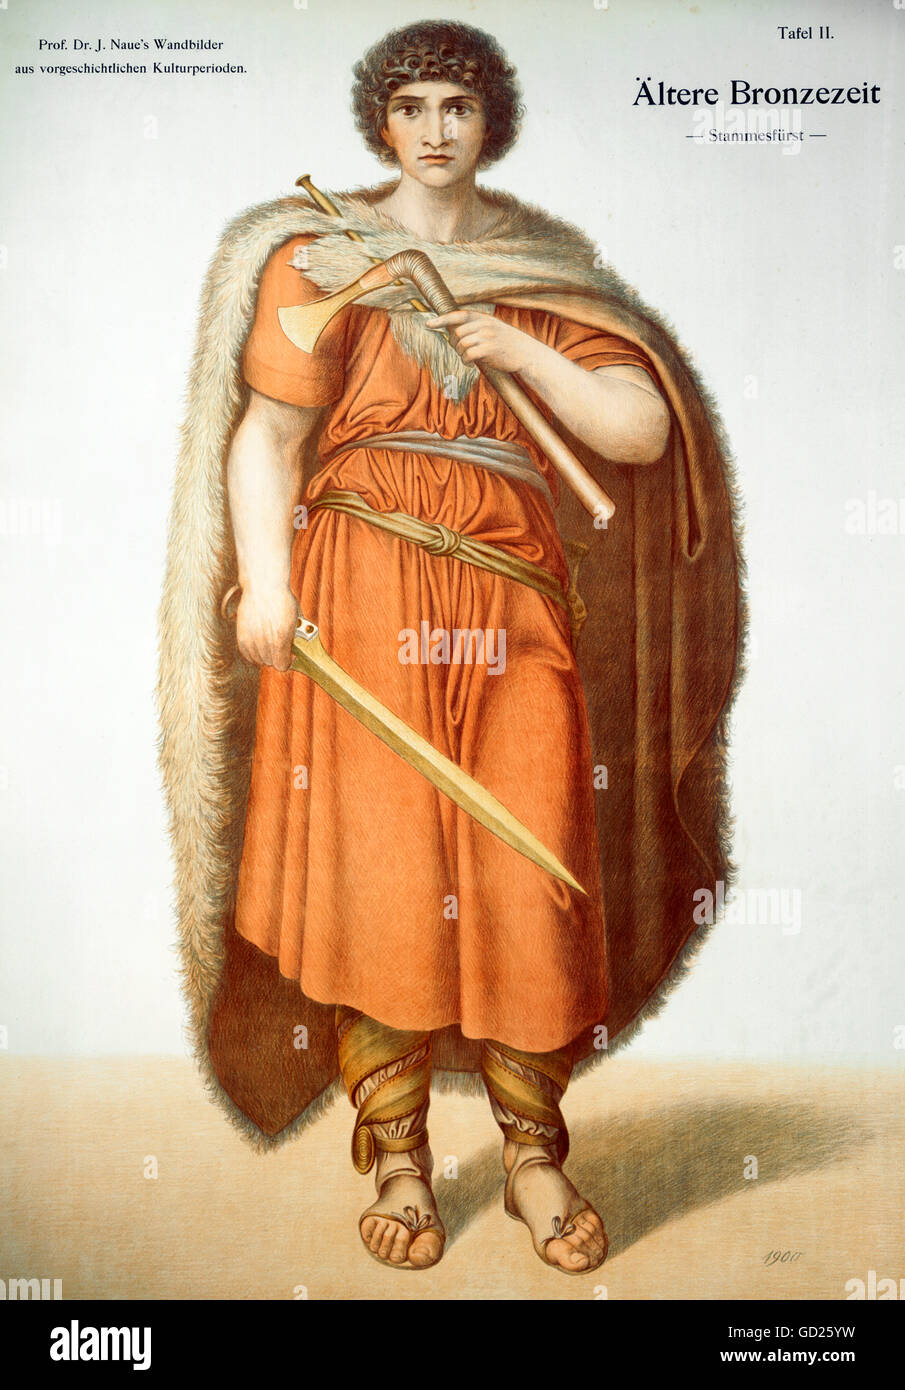 Monde antique, germanique, chef tribal, âge du bronze tardif, fresque de J. Naue, 1900, droits additionnels-Clearences-non disponible Banque D'Images